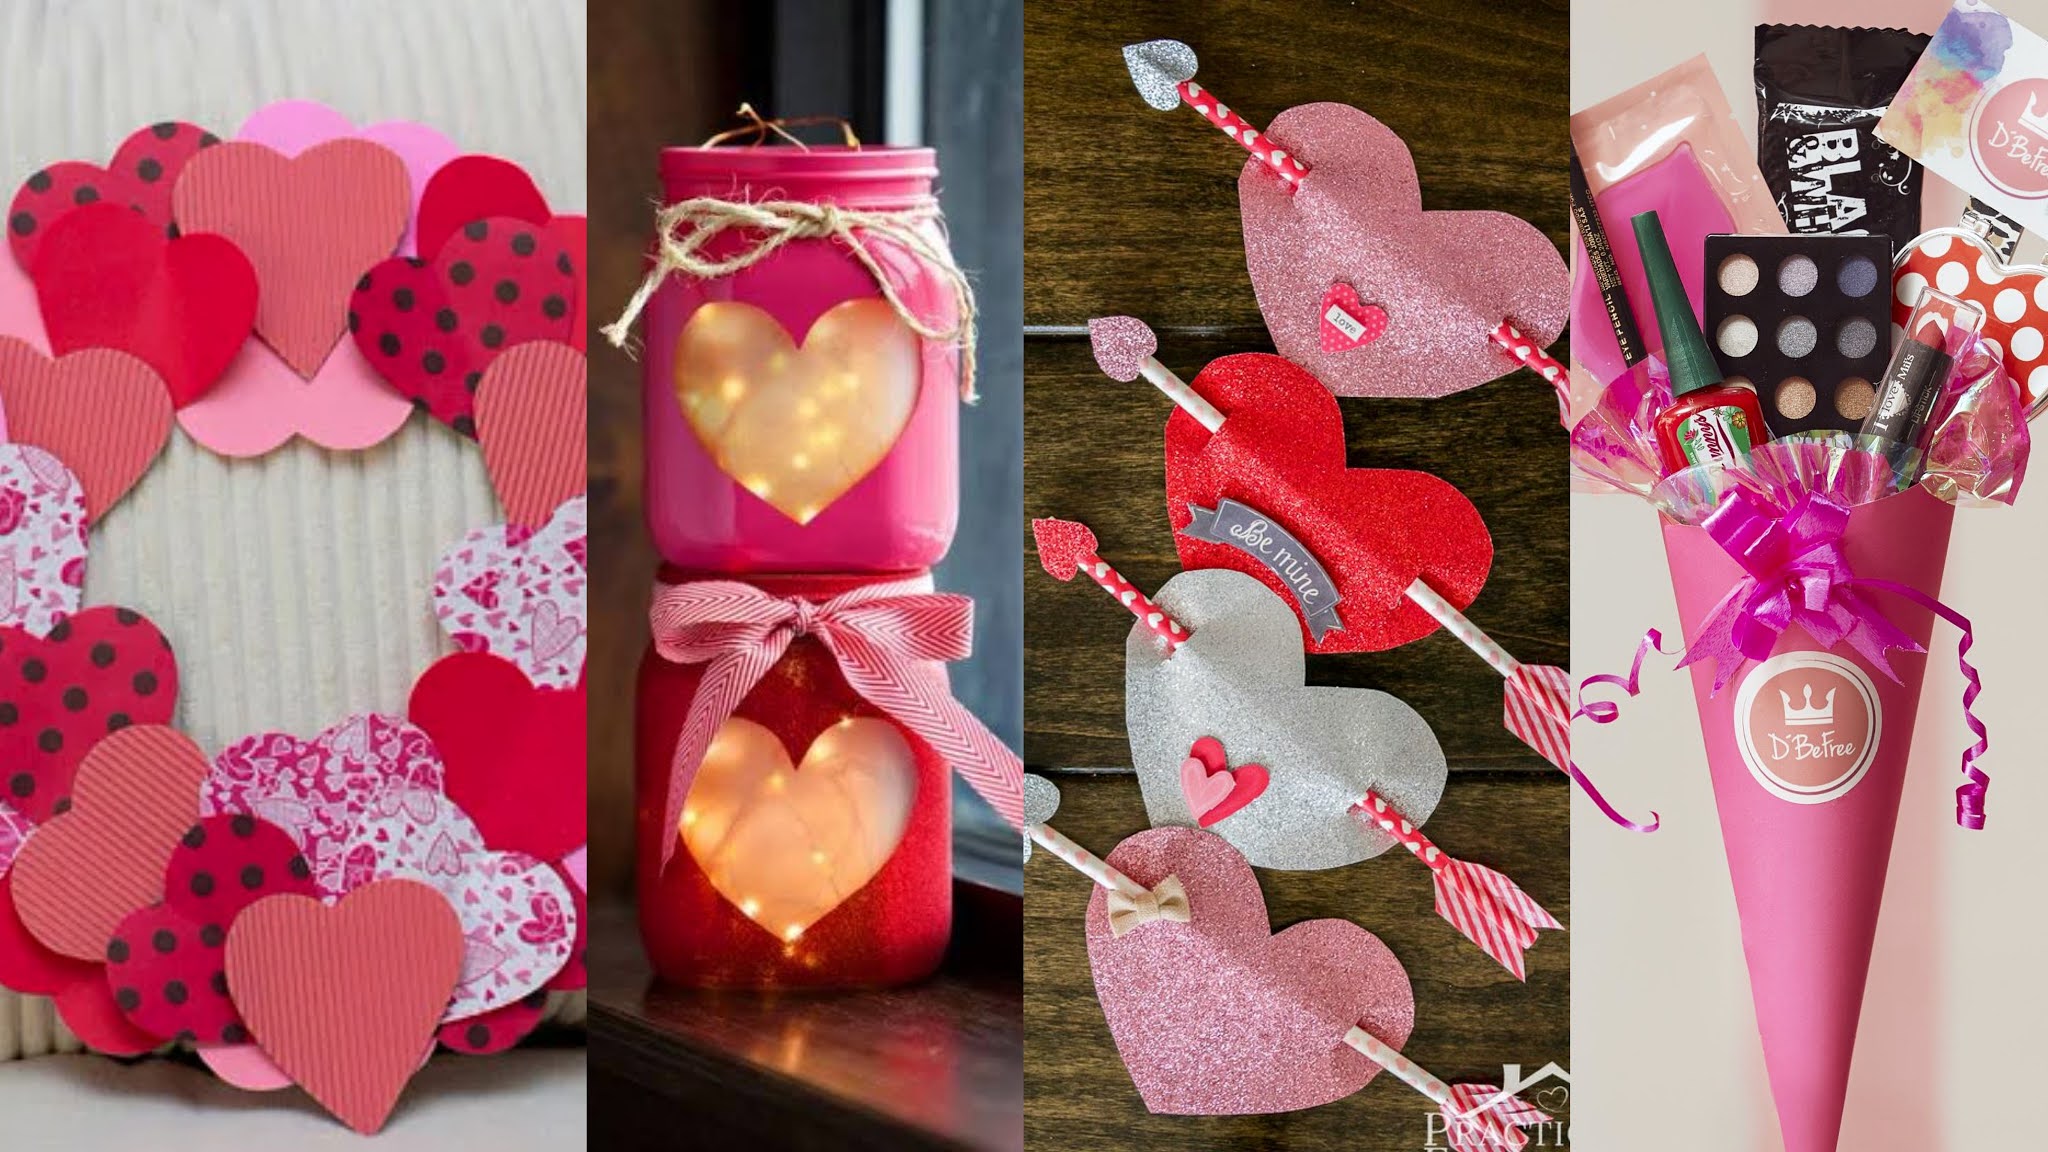 Ronycreativa blog de manualidades: 30 ideas para Valentín o Día del y la Amistad DIY